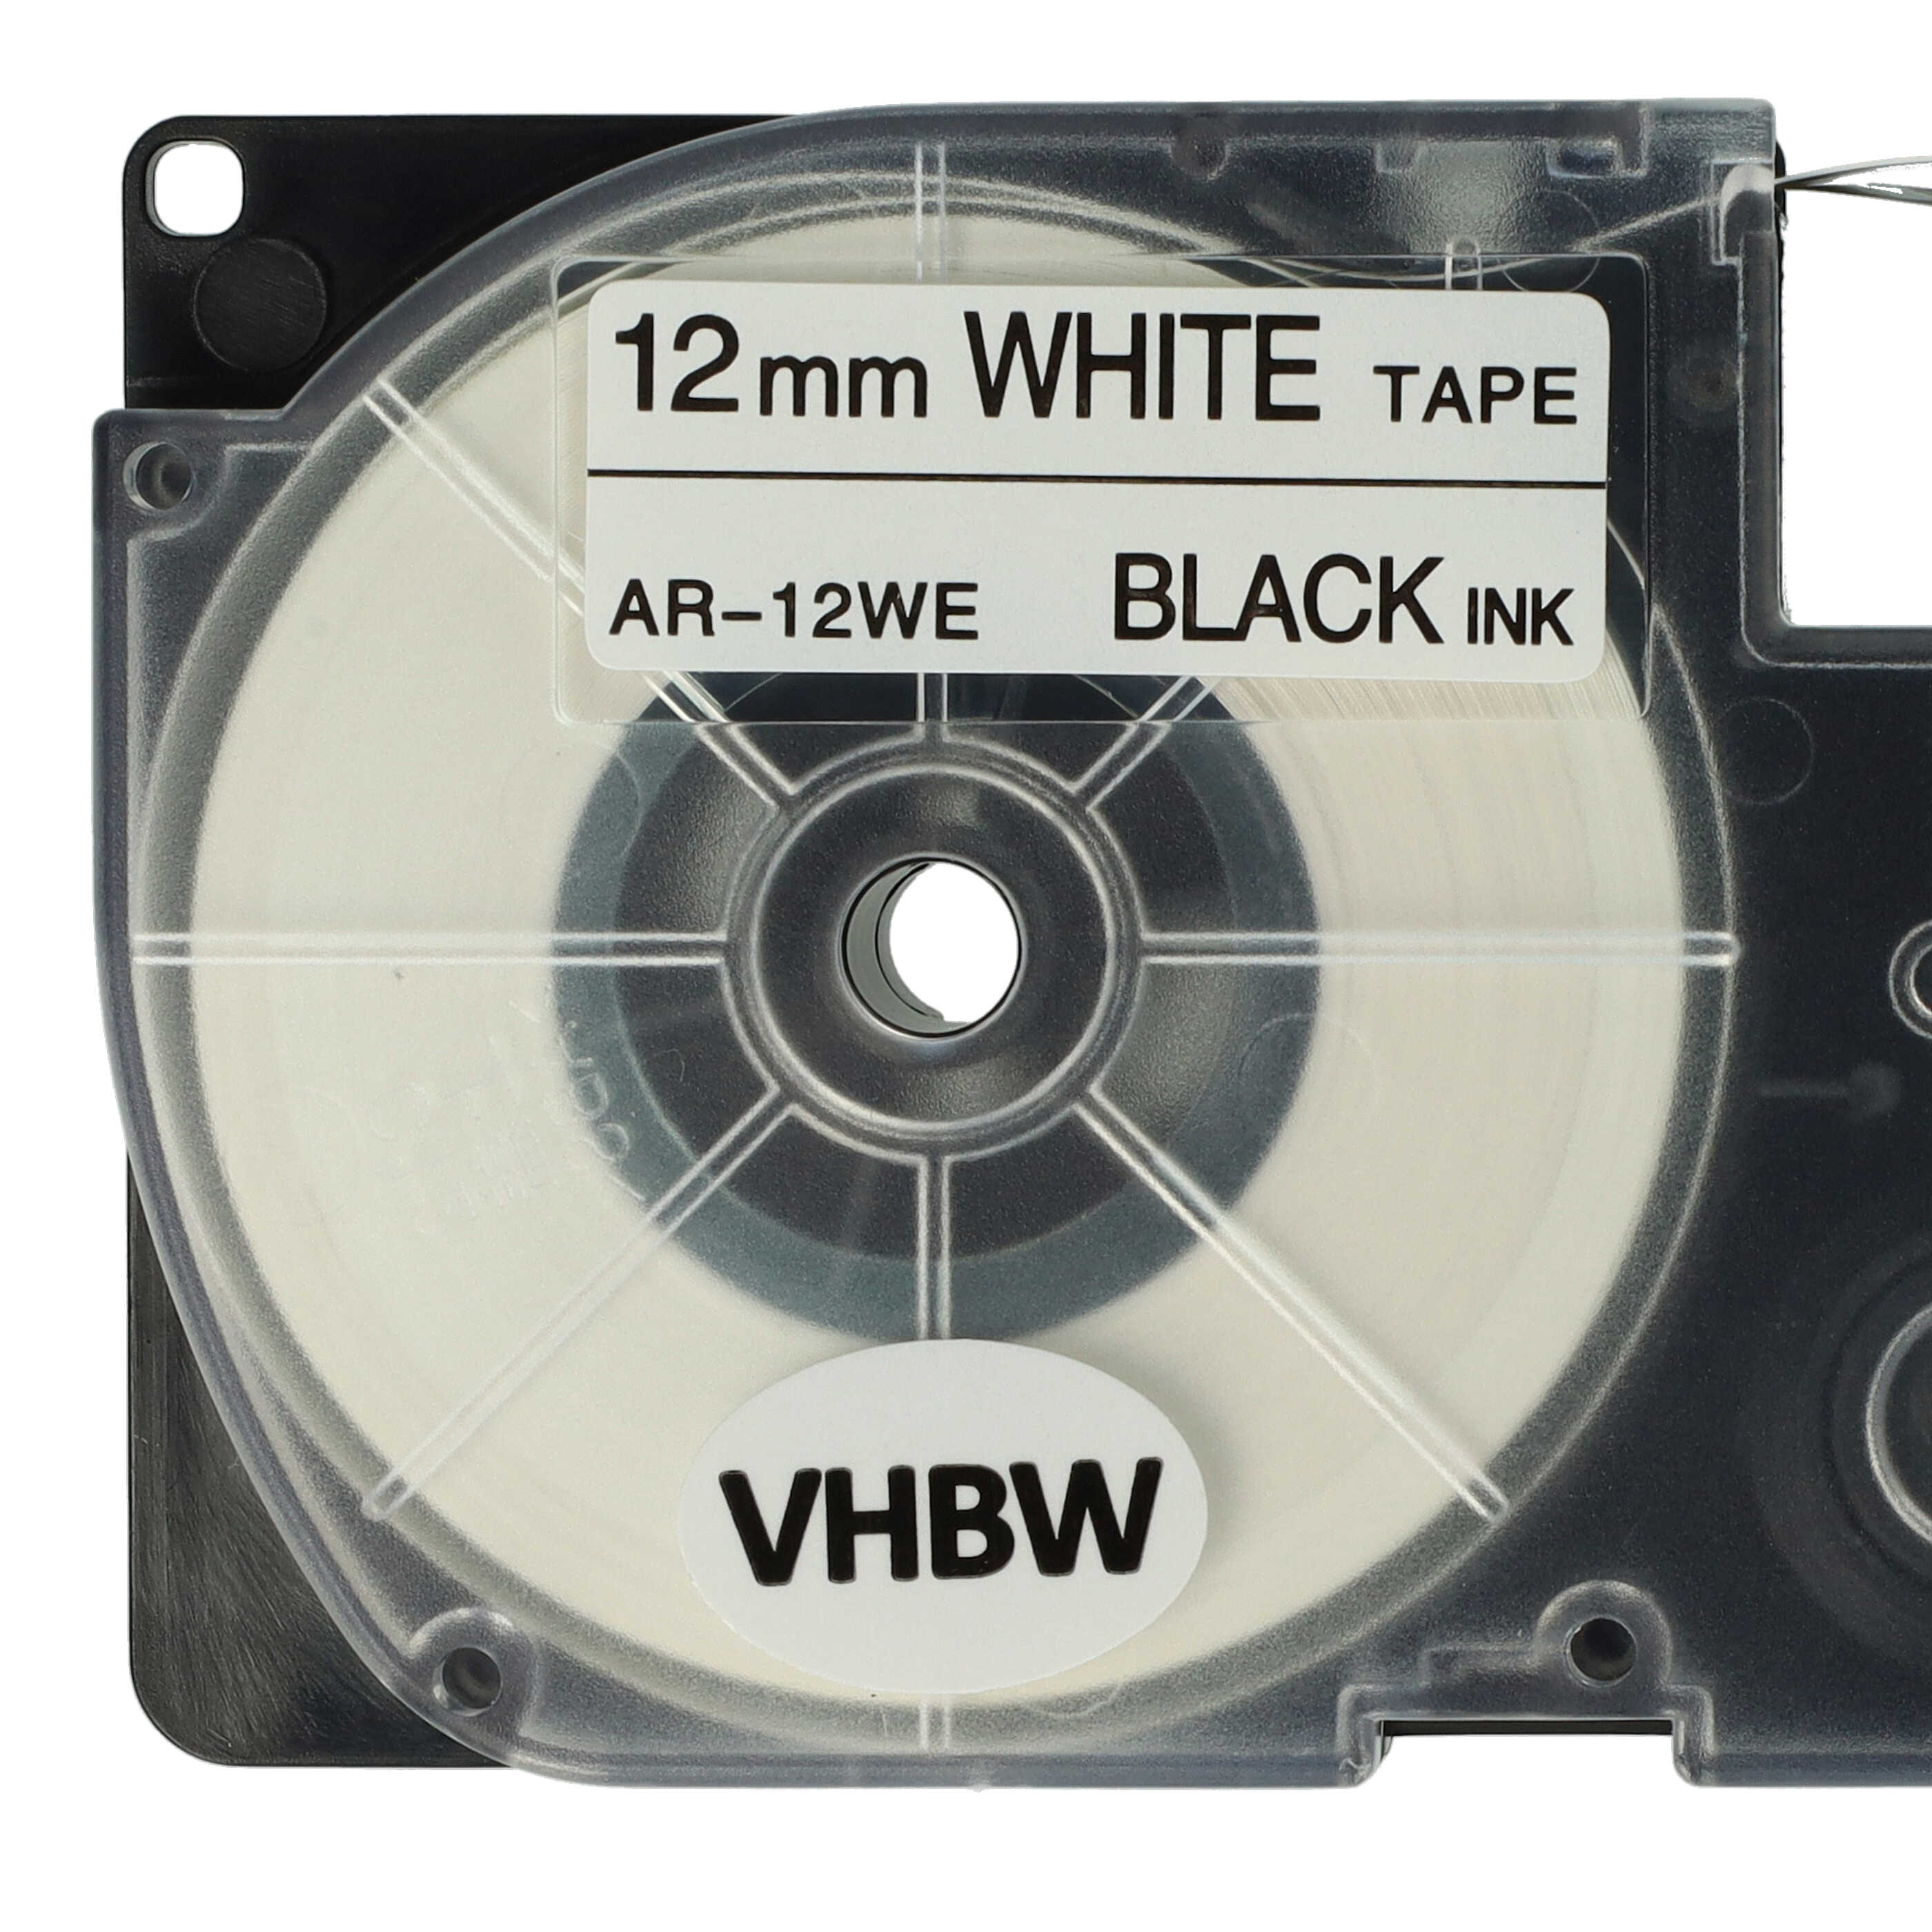 5x Schriftband als Ersatz für Casio XR-12WE, XR-12WE1 - 12mm Schwarz auf Weiß